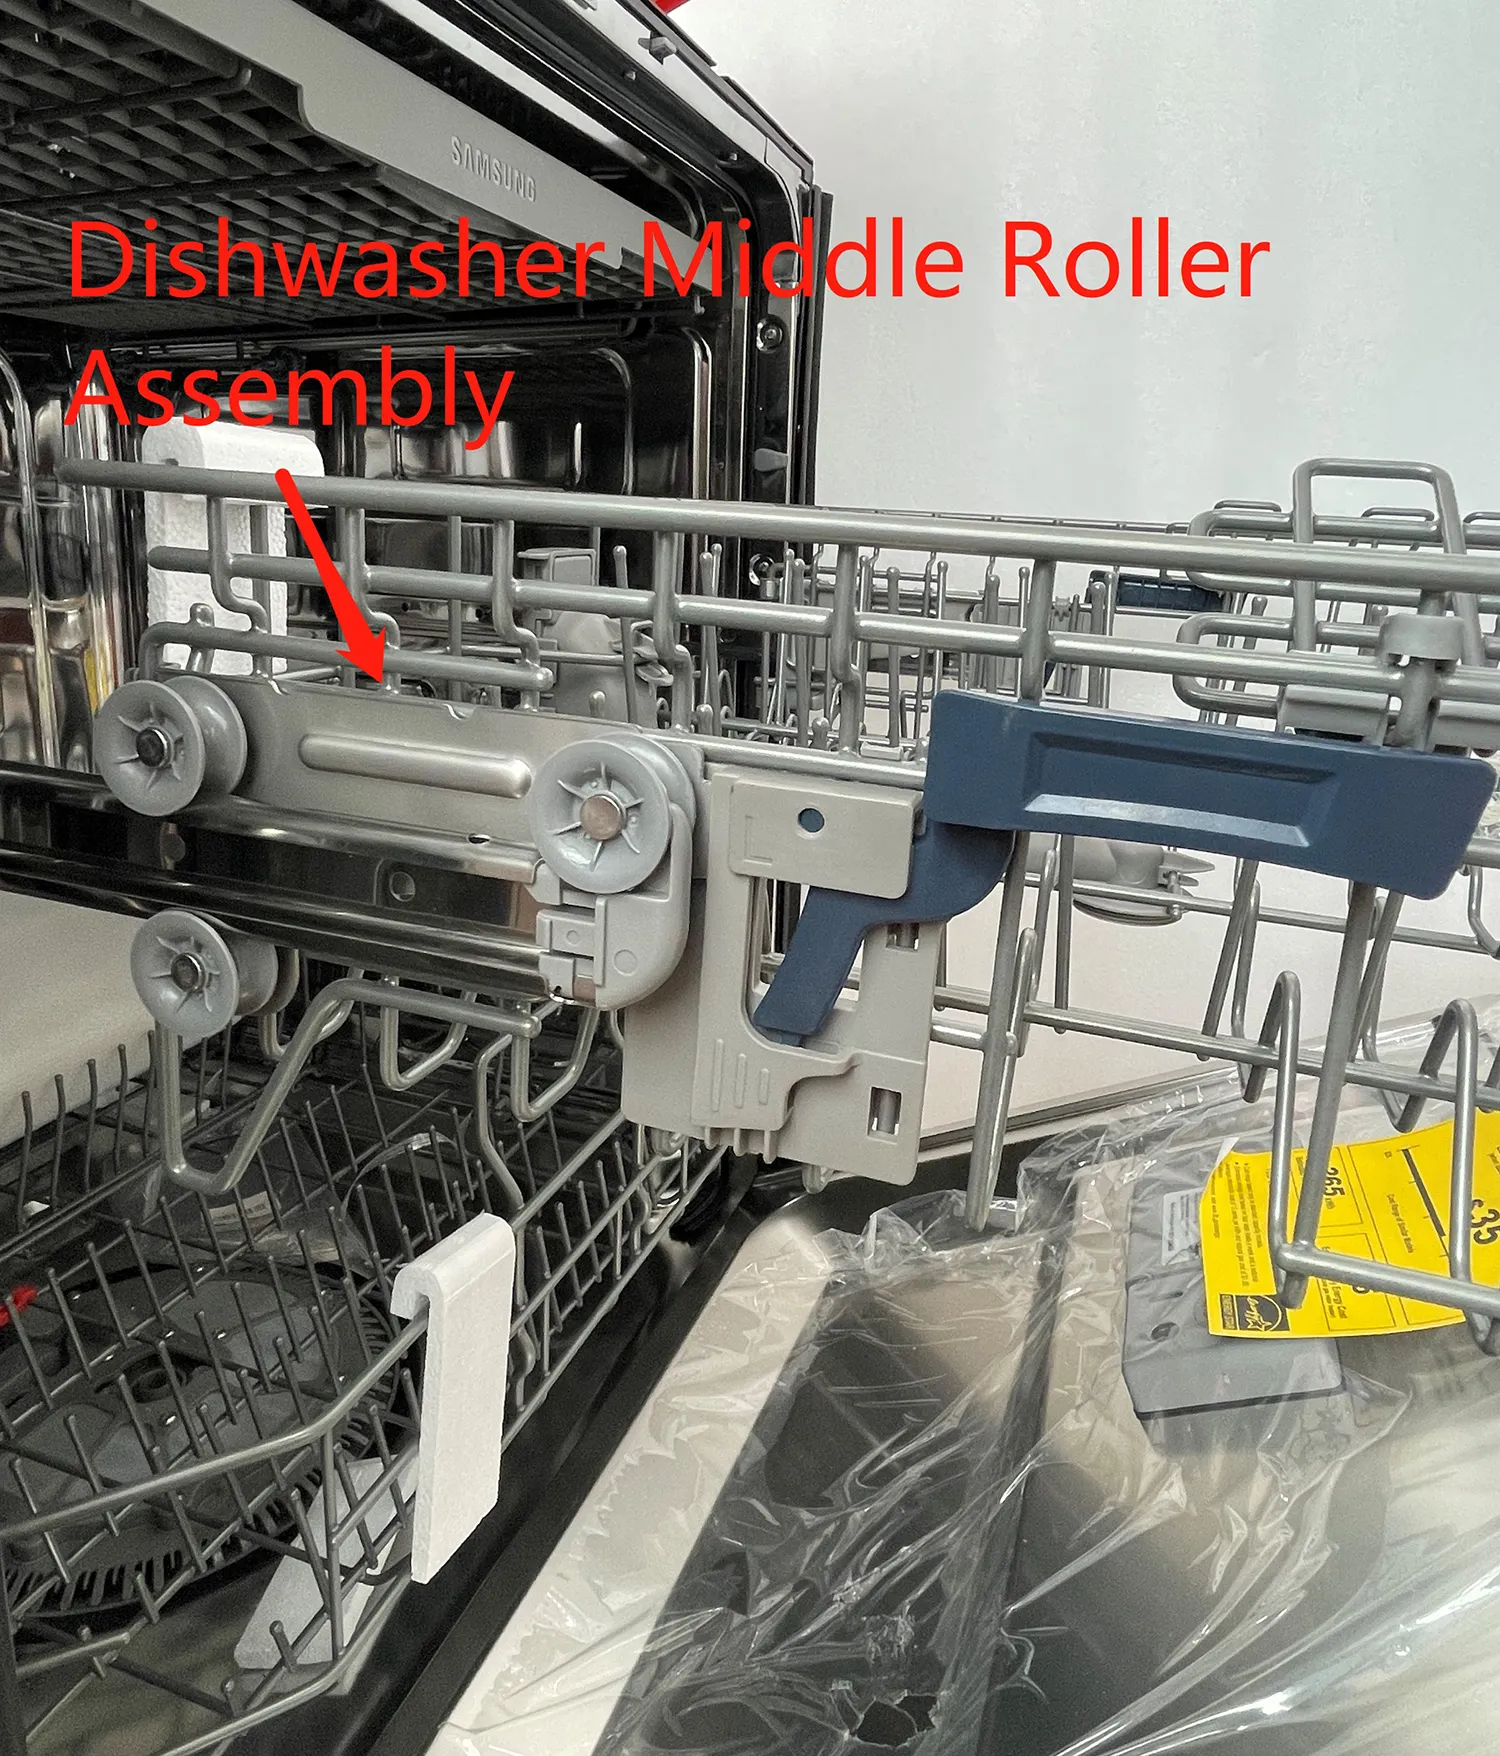 DD97-00122A регулировочный кронштейн для корзины для посудомоечной машины, левая БОКОВАЯ система-средний ролик для посудомоечной машины в сборе, левая стойка для колес из нержавеющей стали